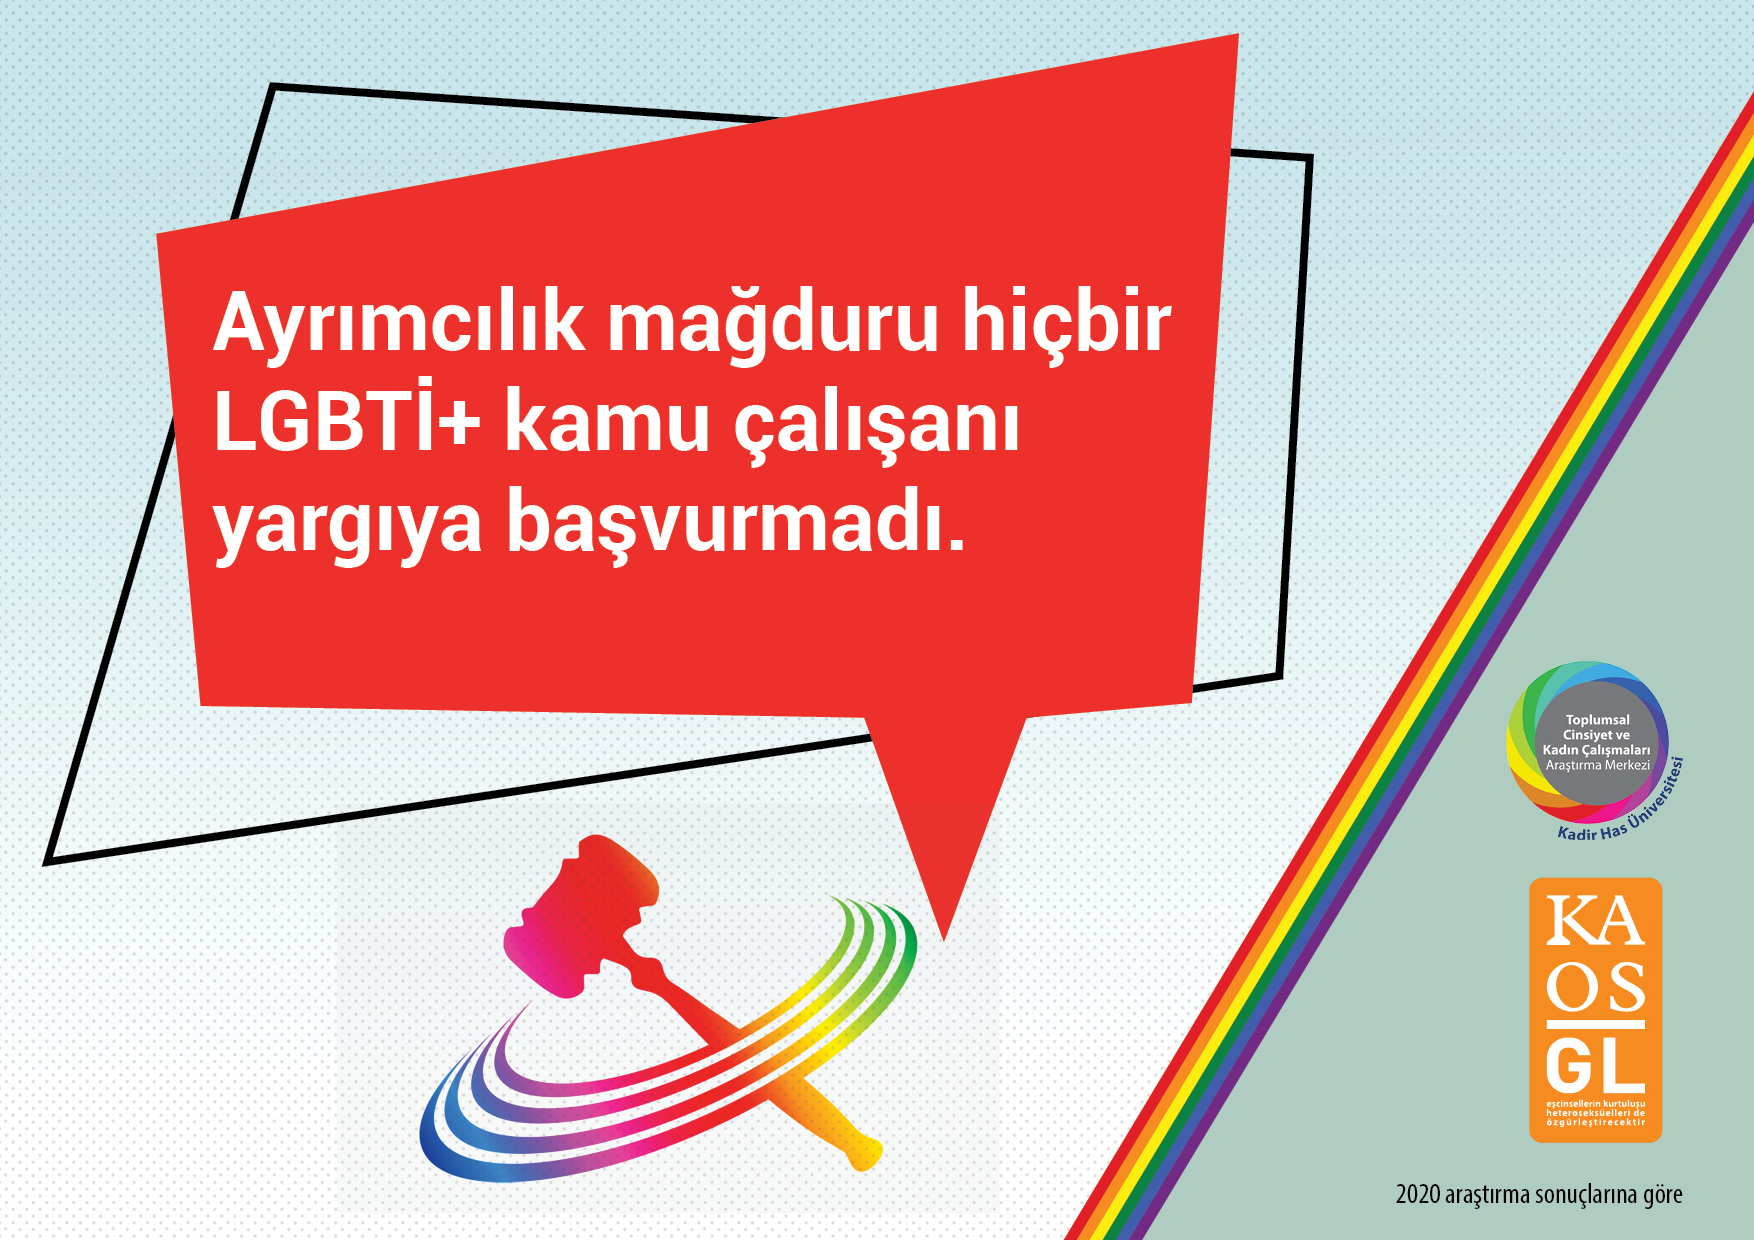 “LGBTİ+ kamu çalışanları ayrımcılığa karşı resmi kanallara güvenmiyor” | Kaos GL - LGBTİ+ Haber Portalı